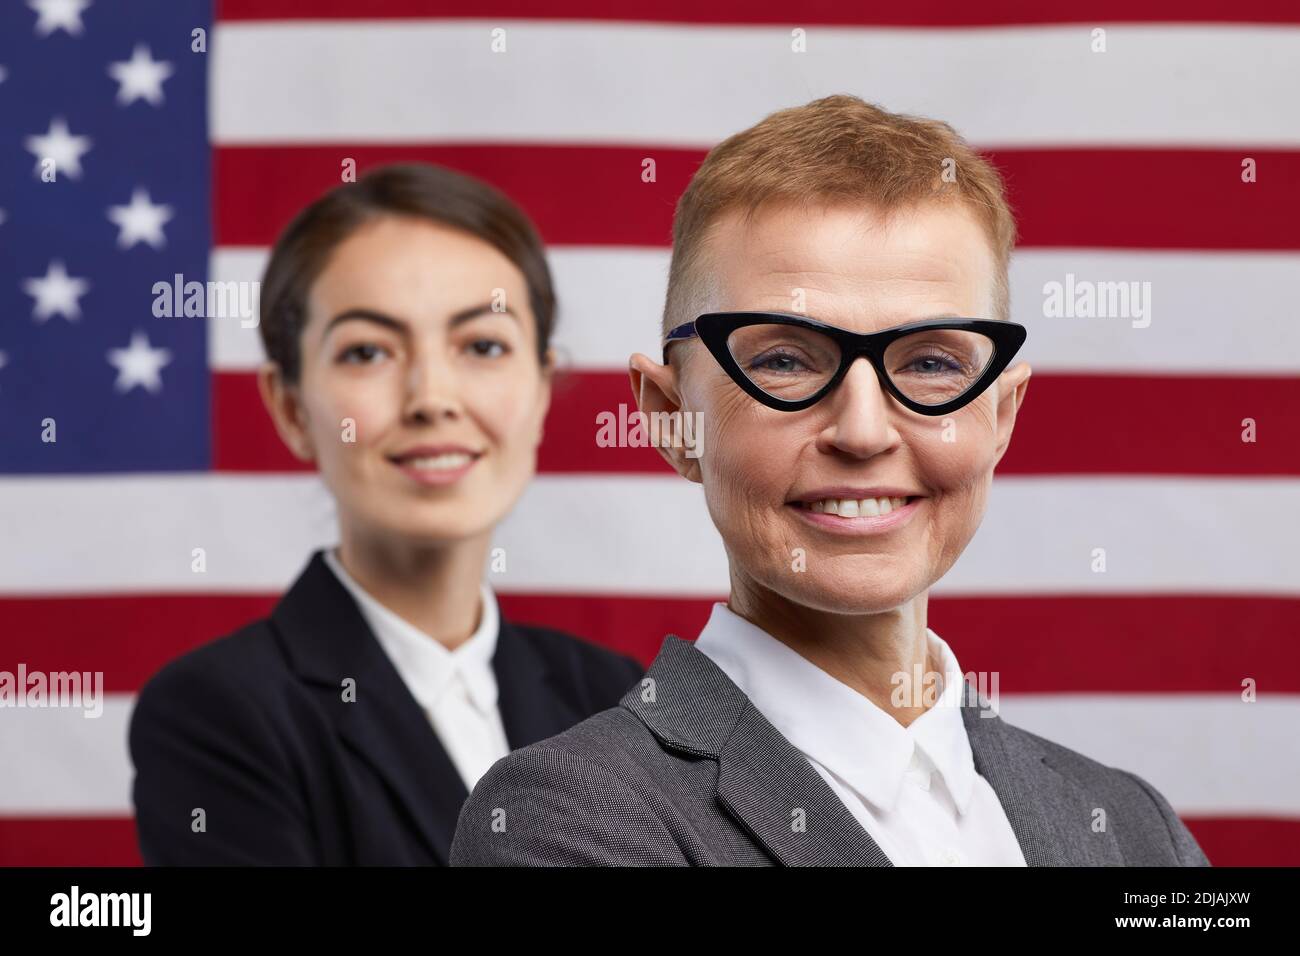 Primo piano ritratto di due politici fidati che guardano la fotocamera mentre si levano in piedi contro lo sfondo della bandiera degli Stati Uniti, copy space Foto Stock